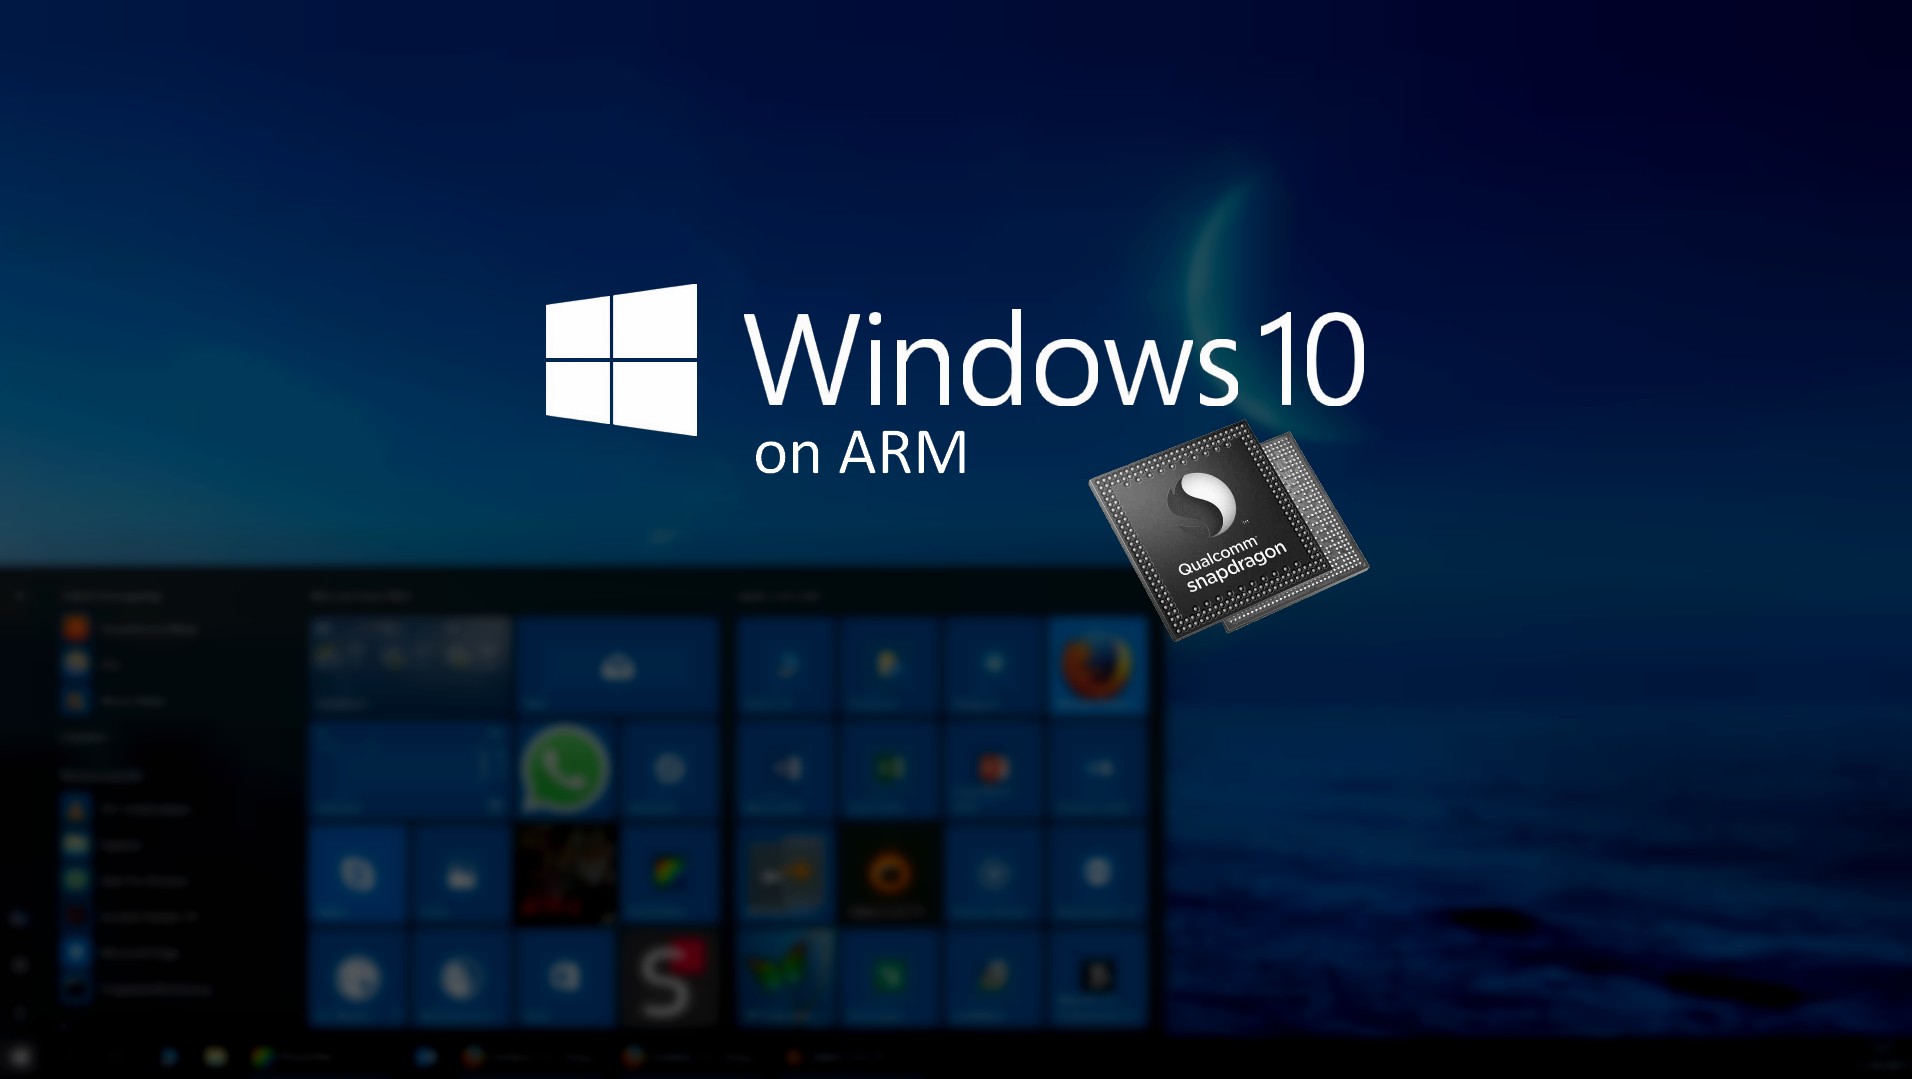 Inanunsyo ng Microsoft ang OpenCL at OpenGL Compatibility Pack para sa Windows 10 sa ARM